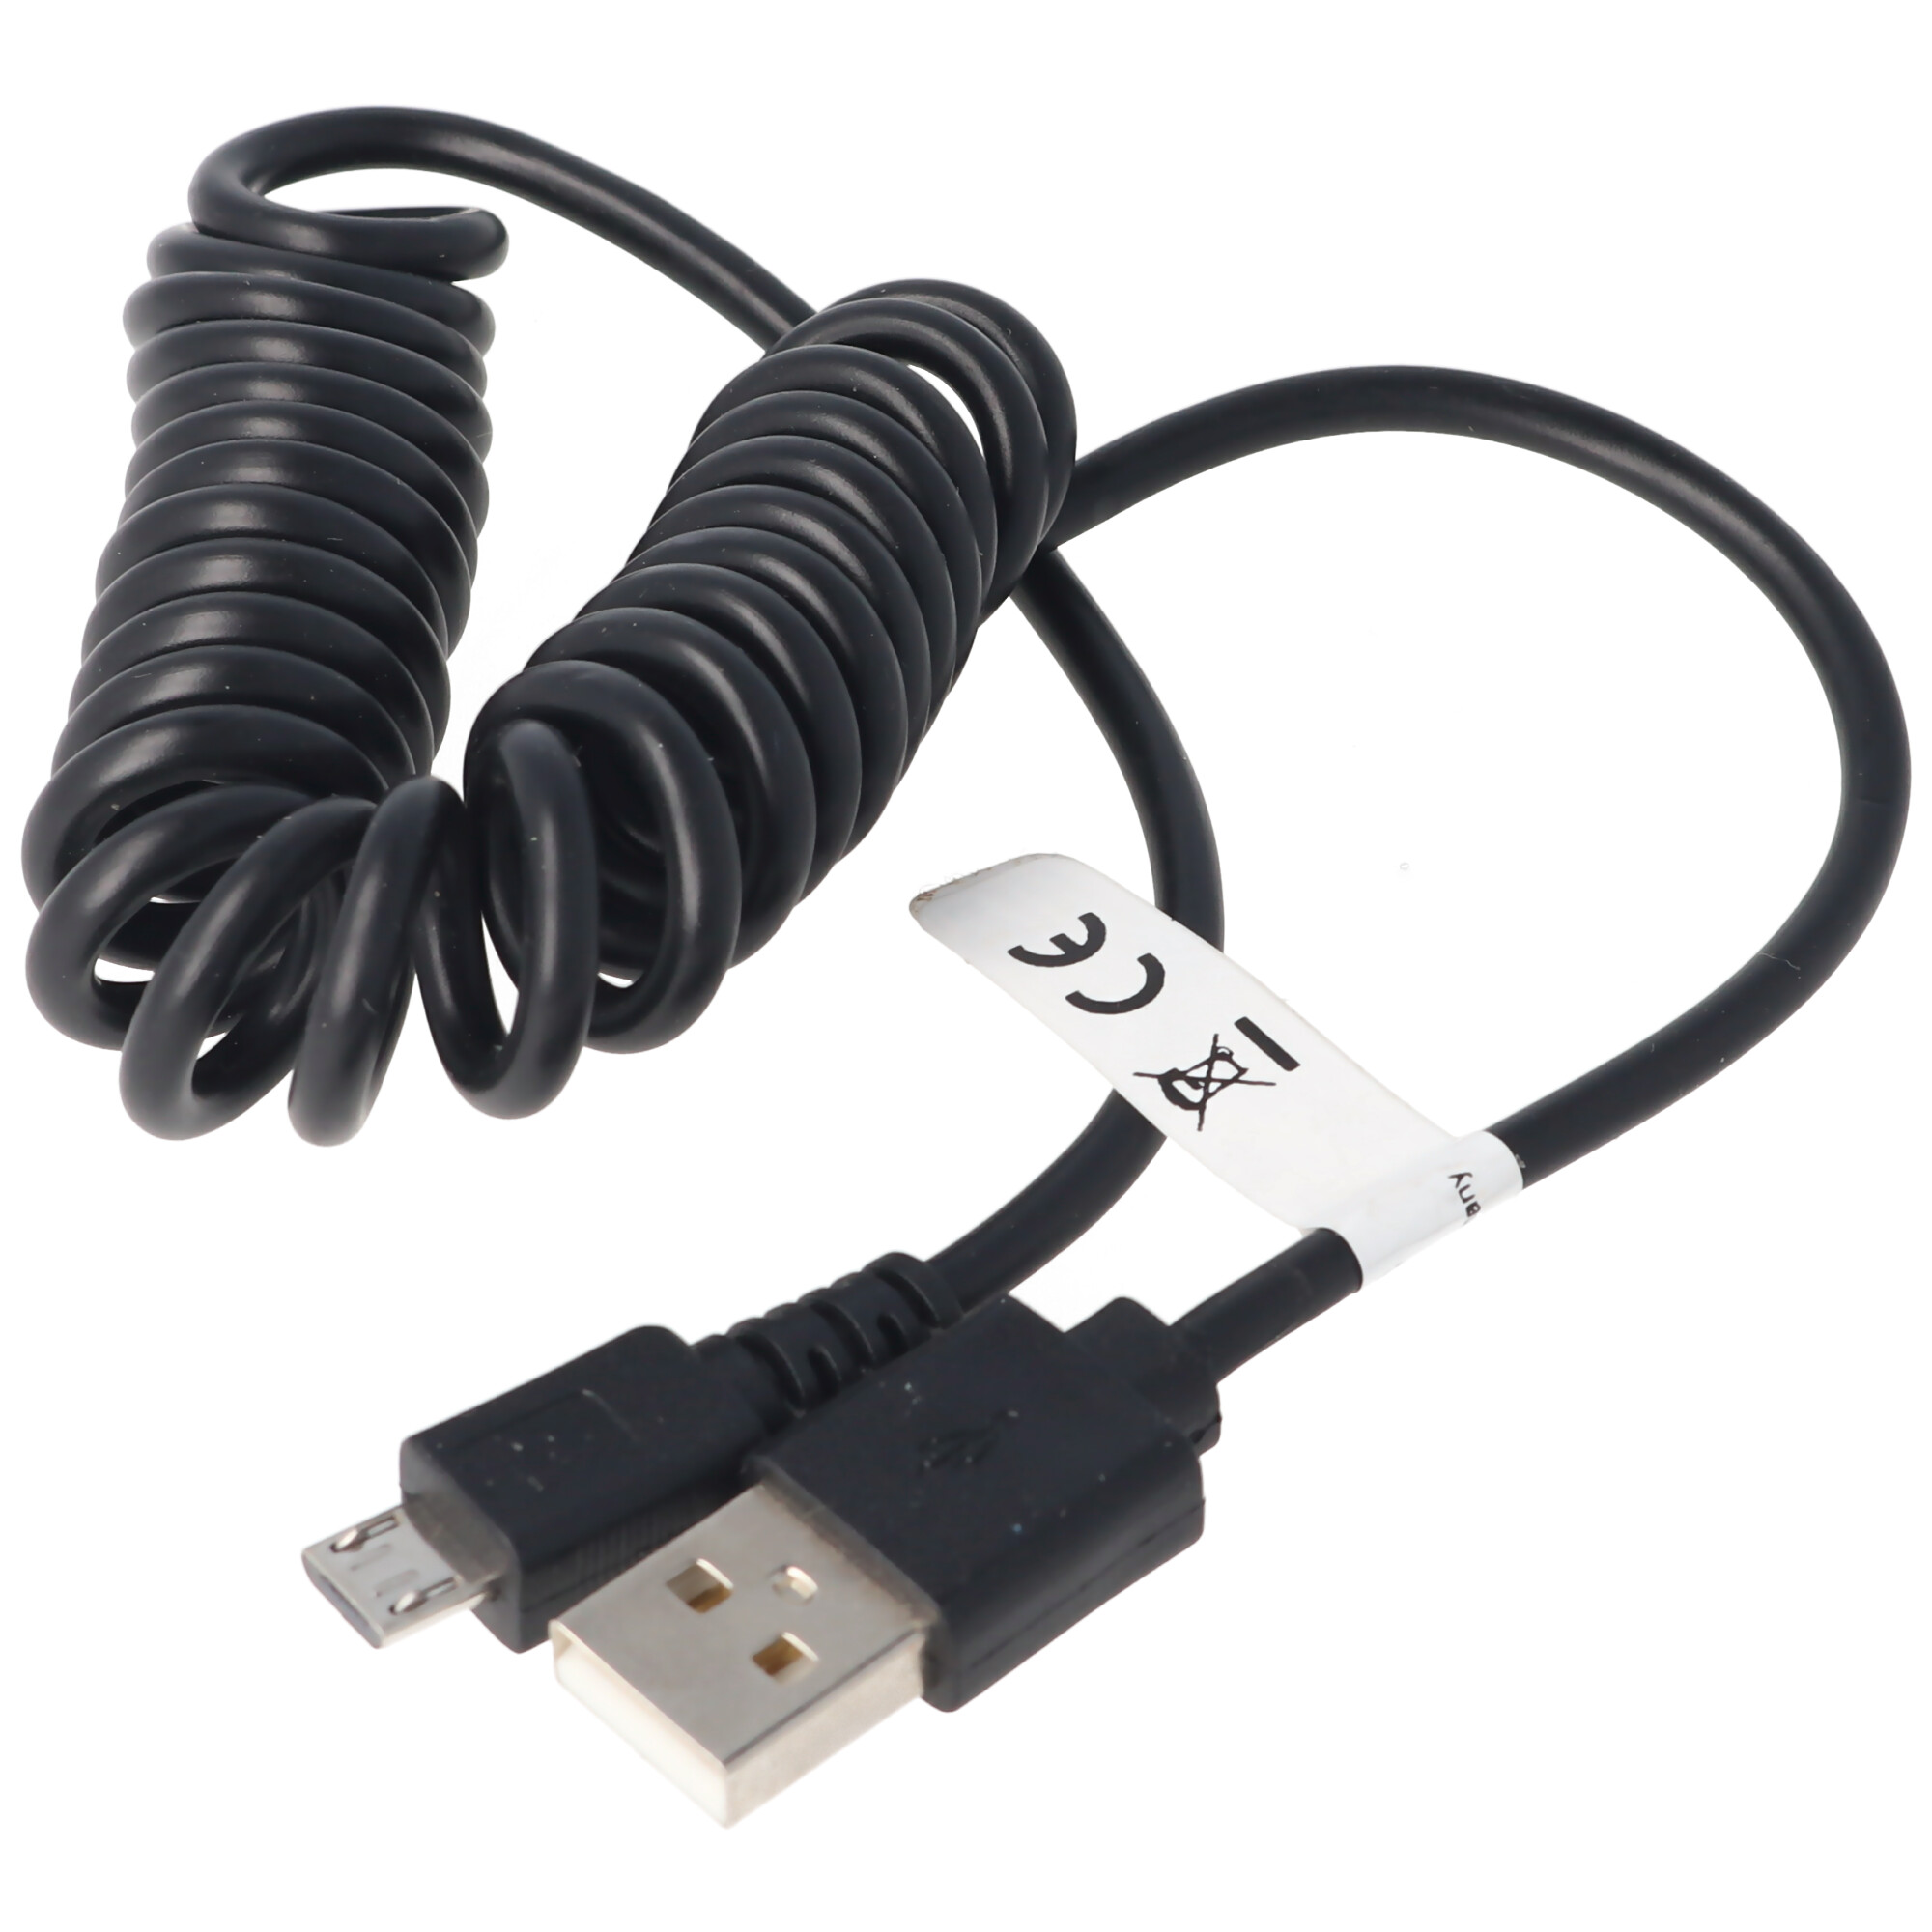 micro-USB Spiral-Anschlusskabel USB-A Stecker auf micro-USB Stecker